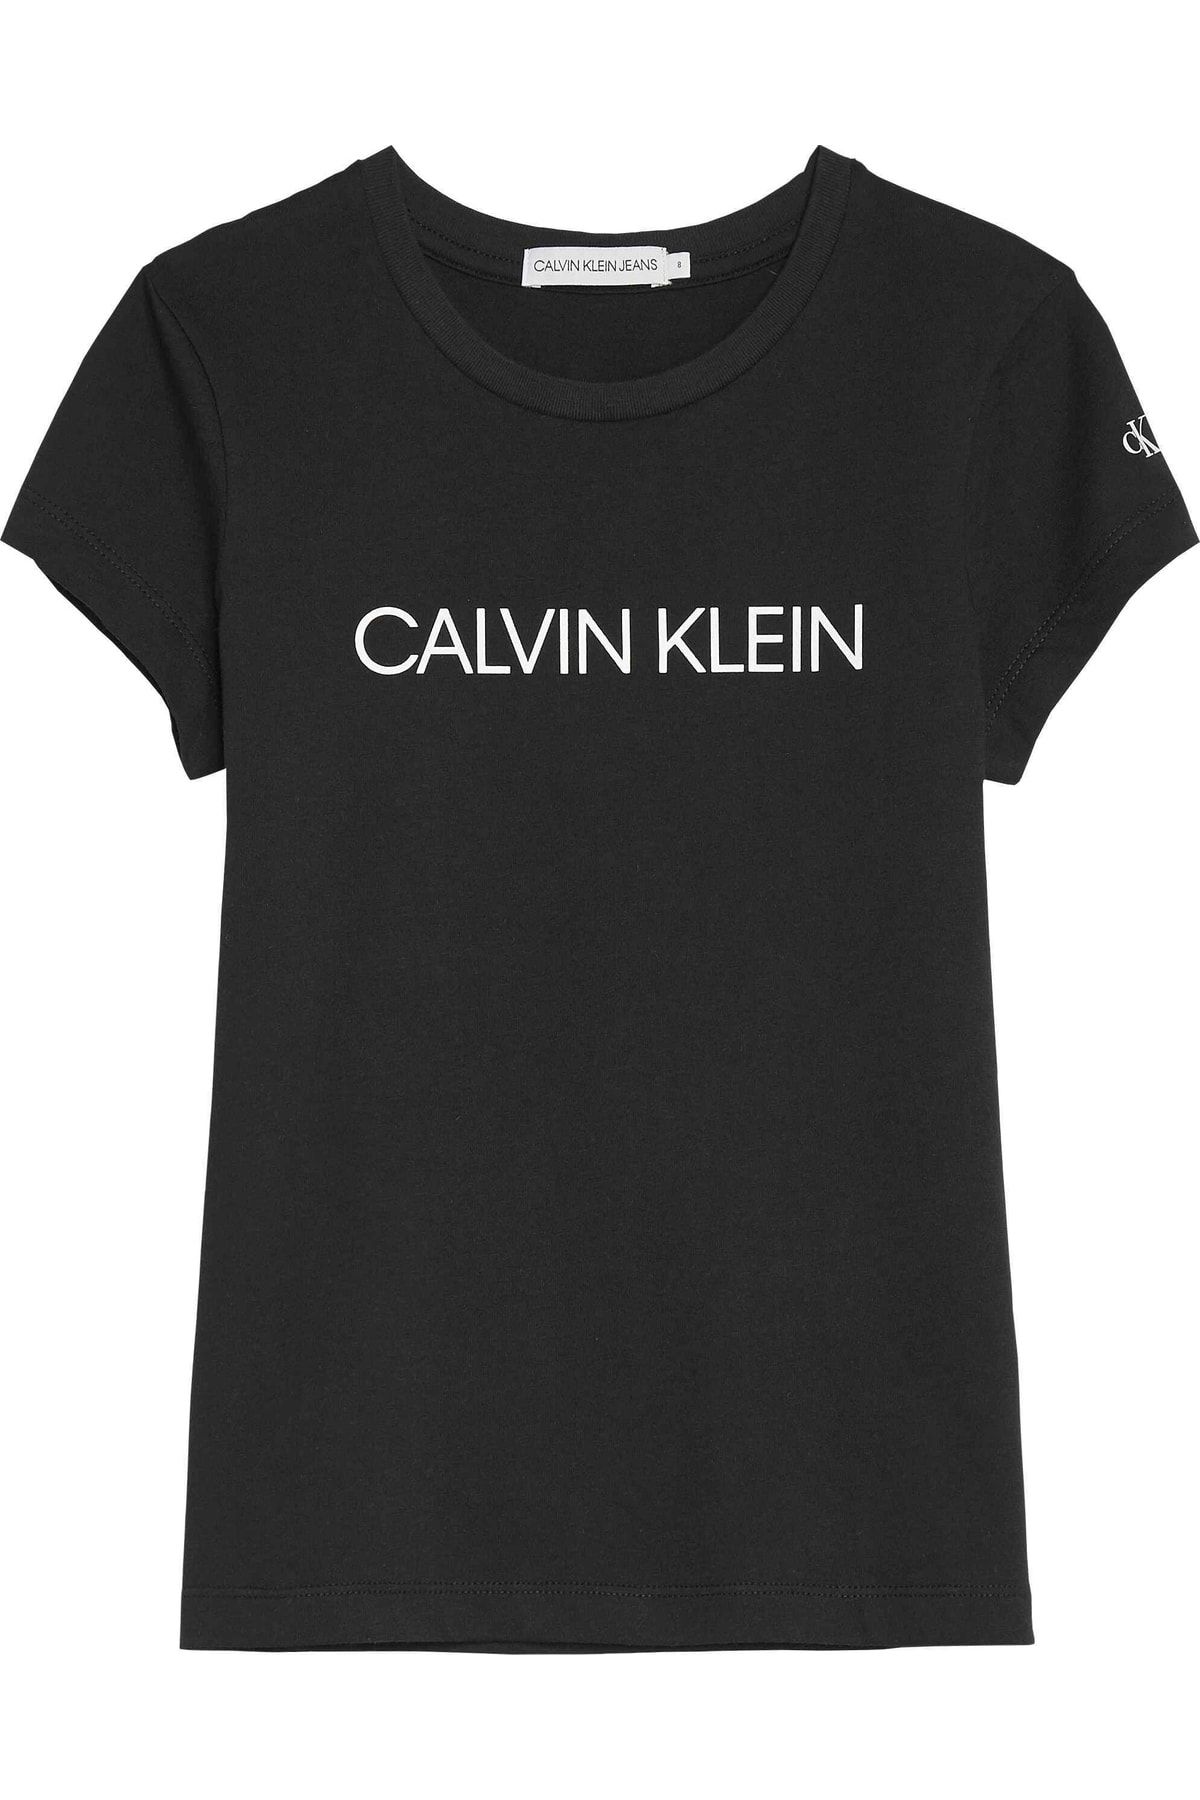 Calvin Klein Mädchen-T-Shirt 20ss1ck0380 Trendyol 